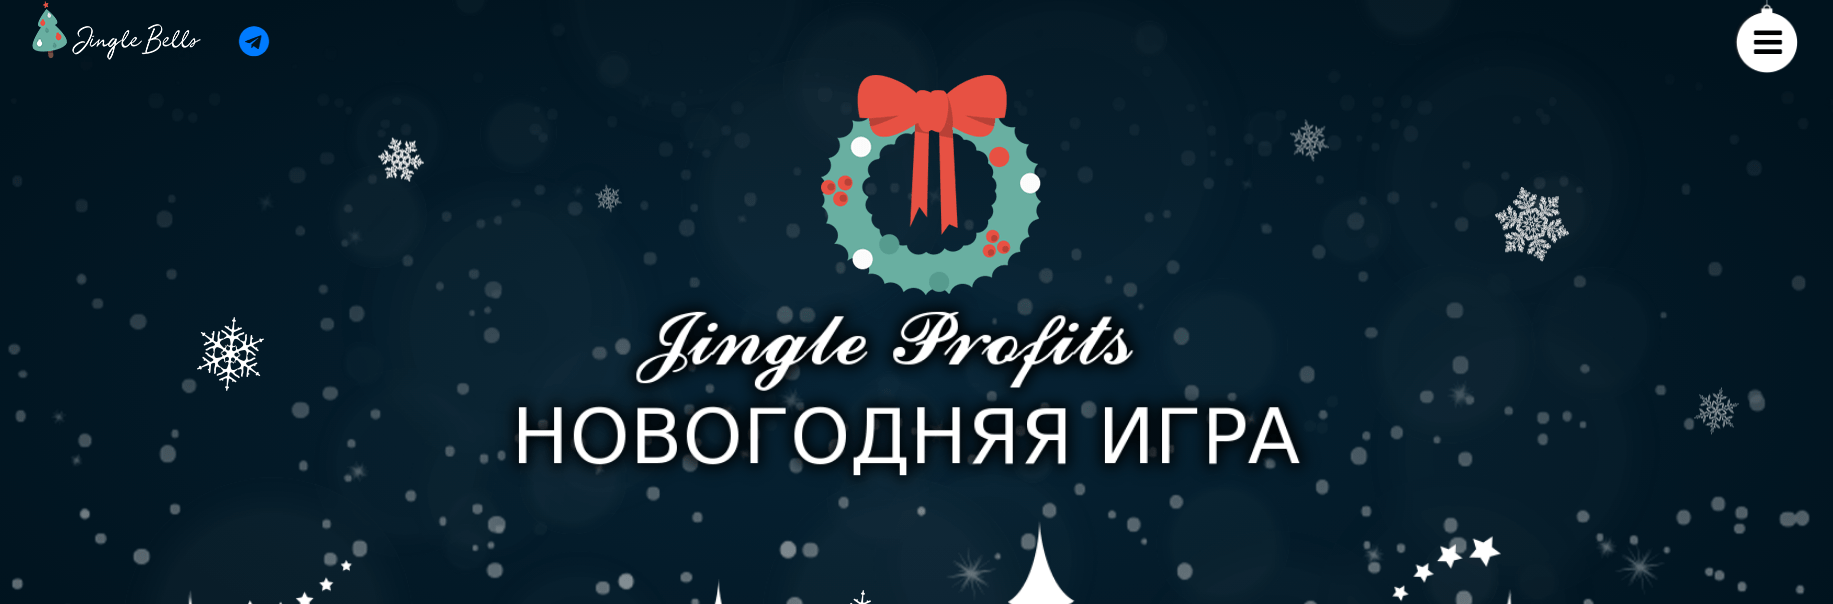 Jingle Profits - подарок к новому году или новый развод? , Фото № 1 - 1-consult.net